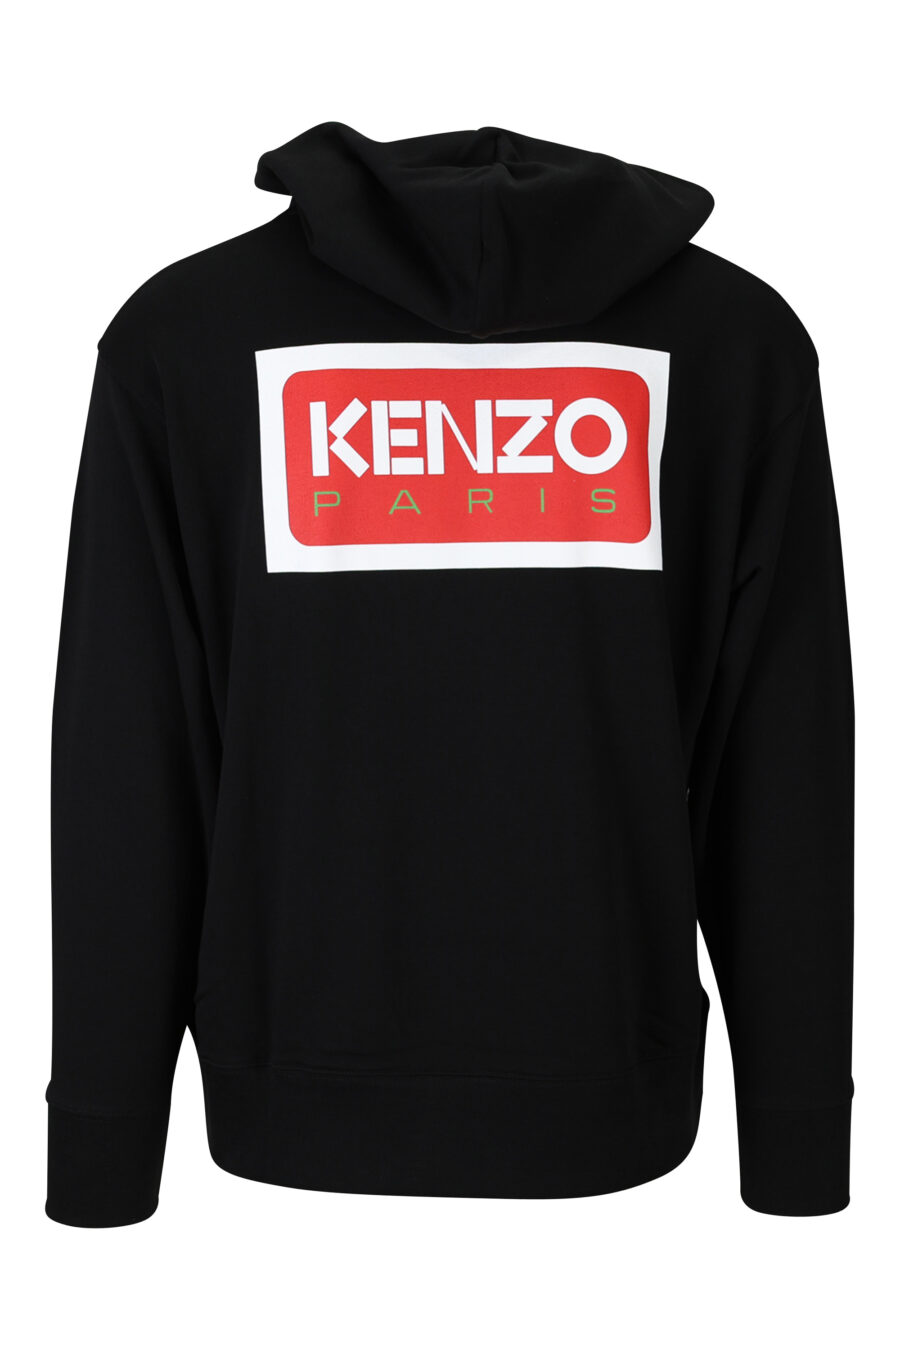 Sweat oversize noir avec capuche et logo "kenzo paris" - 3612230515673 1